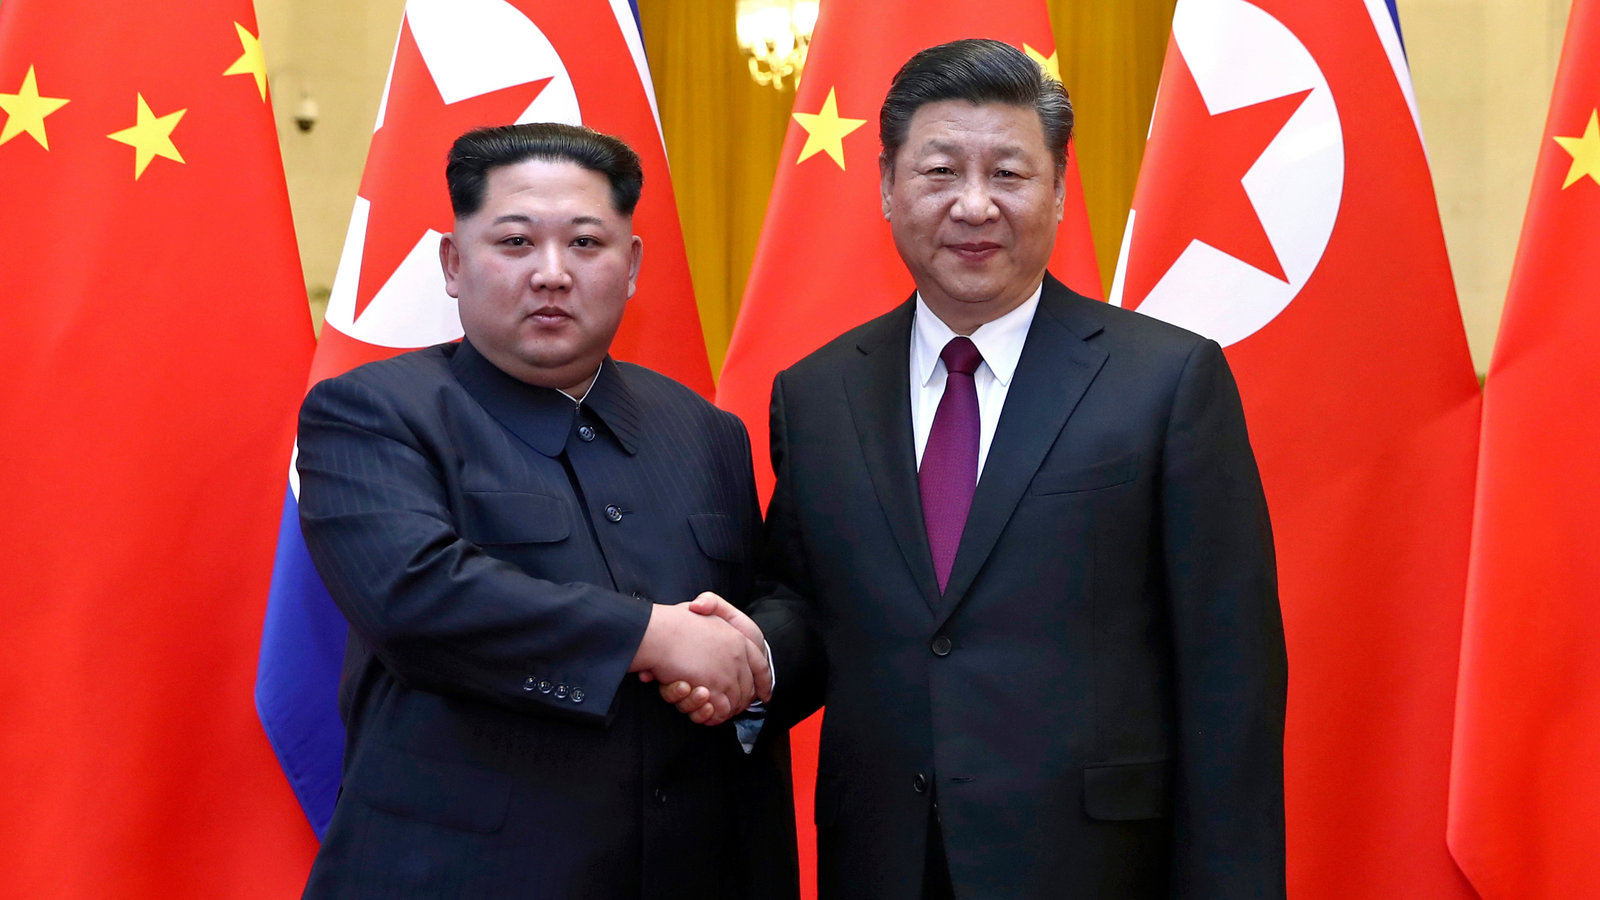 Chủ tịch Trung Quốc Tập Cận Bình (phải) sẽ lần đầu tiên thăm chính thức Triều Tiên và gặp Chủ tịch Triều Tiên Kim Jong-un. Ảnh: New York Times